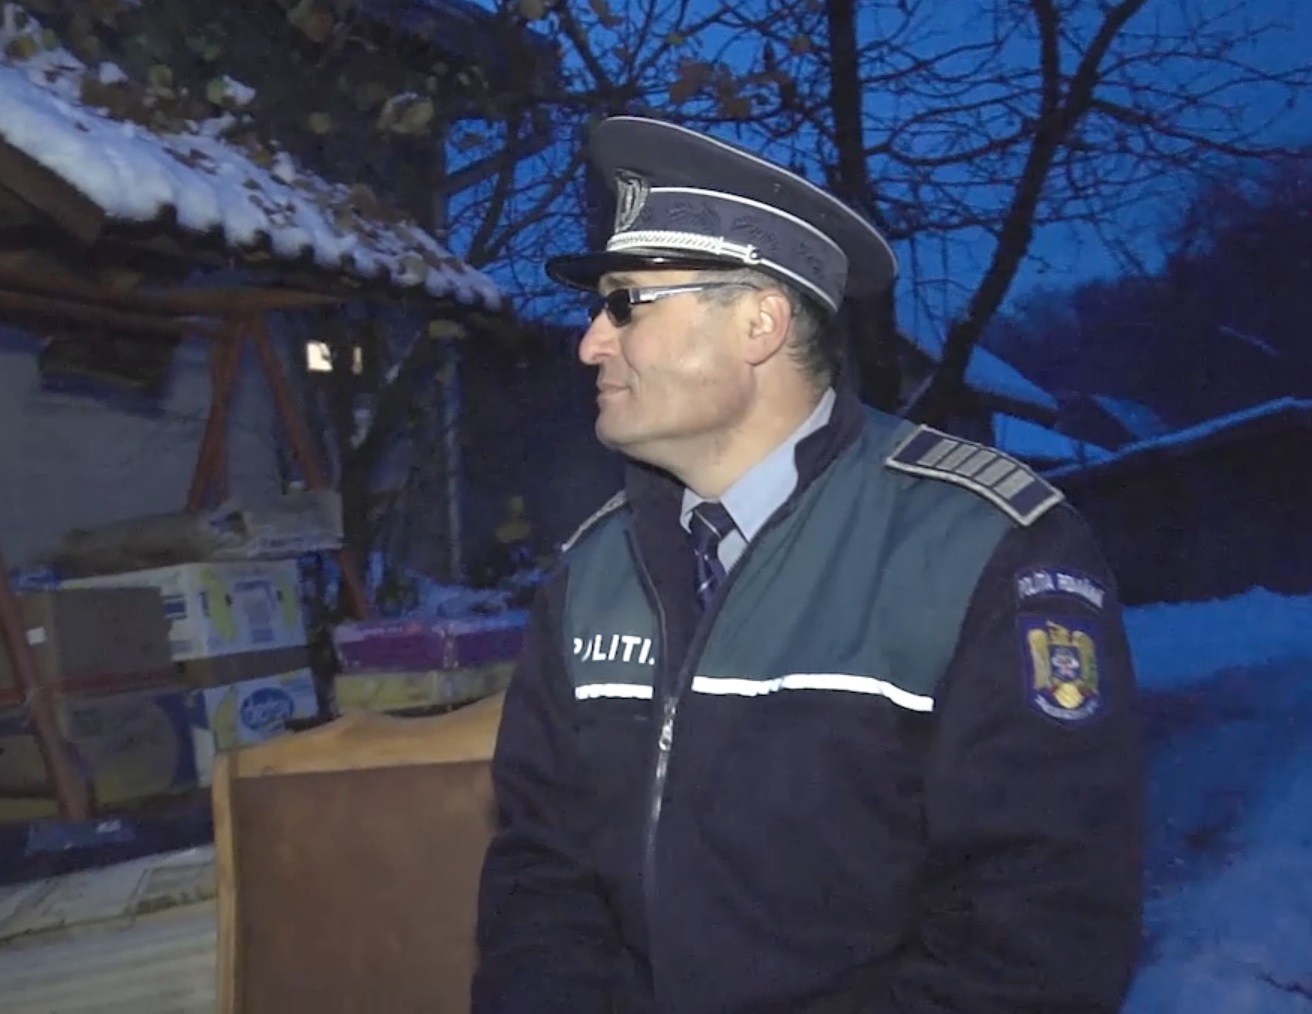 Poliţistul a ajuns cu mobila în stradă, aşteptând ajutor din partea MAI. Sursă FOTO: Monitorul de Suceava.